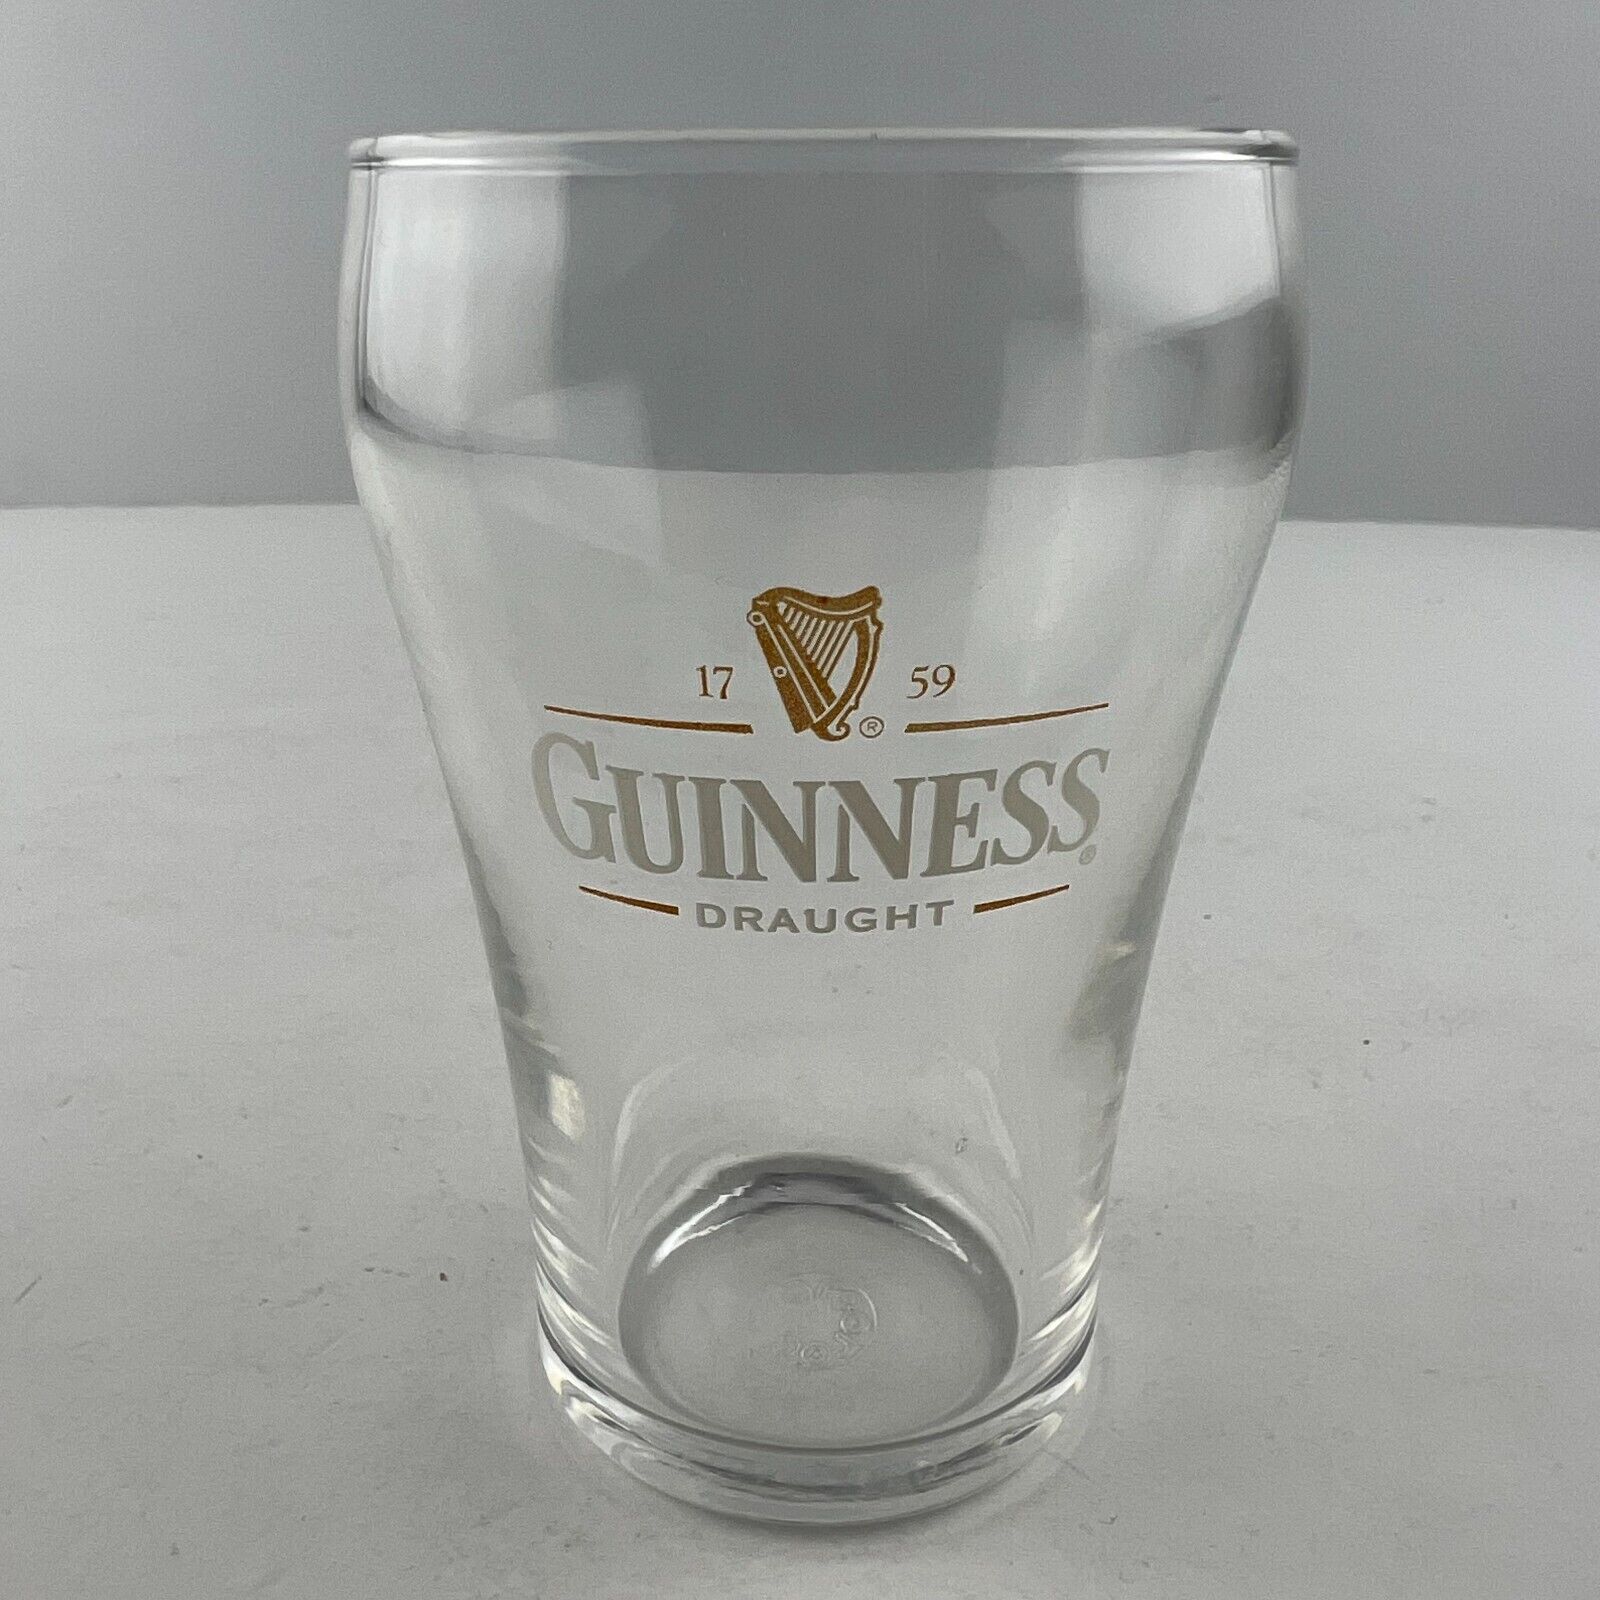 Guinness Draught Ale Beer Sampler Tasting Glass